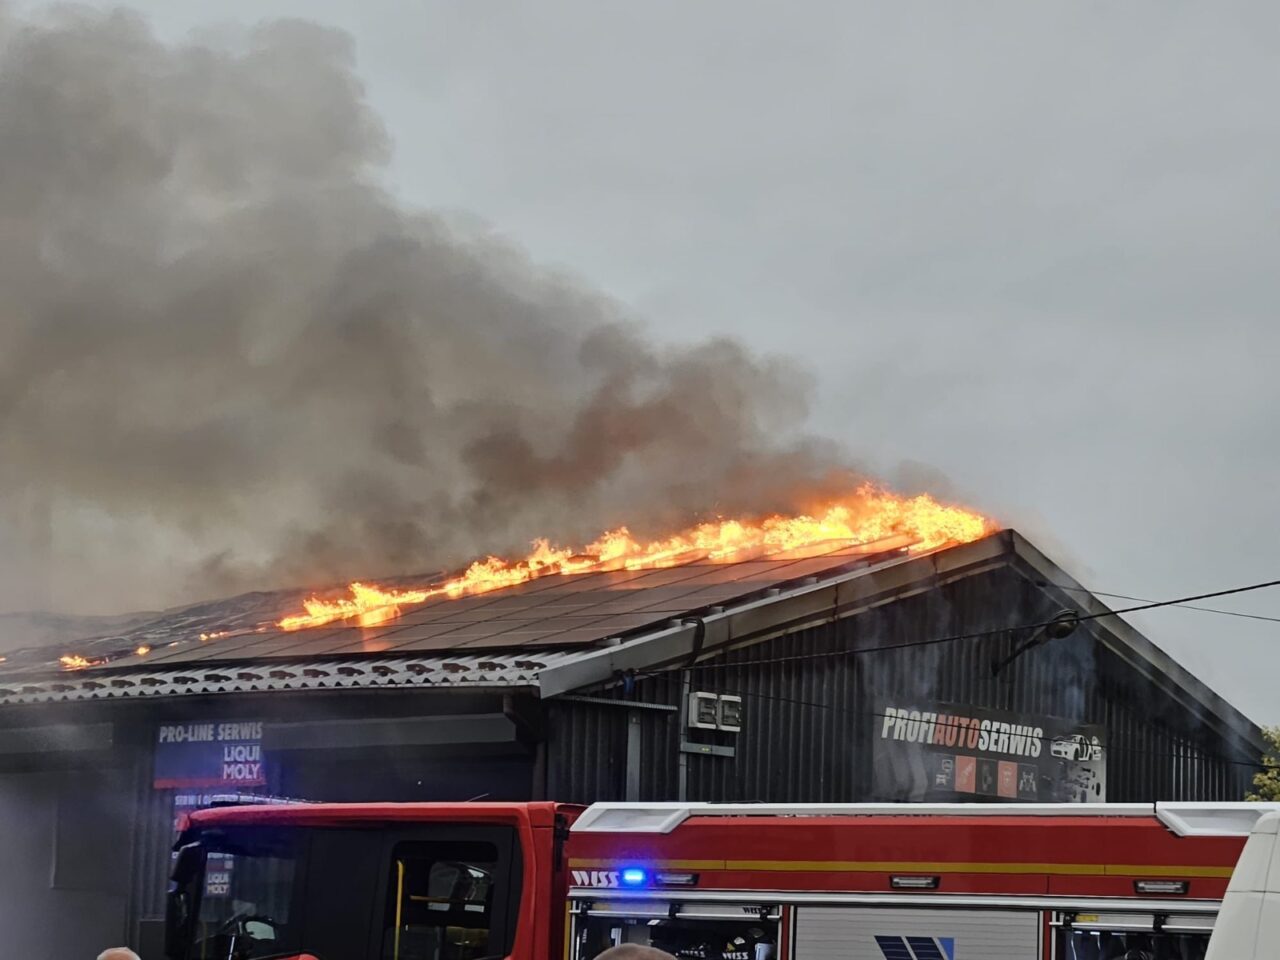 Pożar na dachu budynku przemysłowego z dużą ilością dymu, w tle widać straż pożarną.